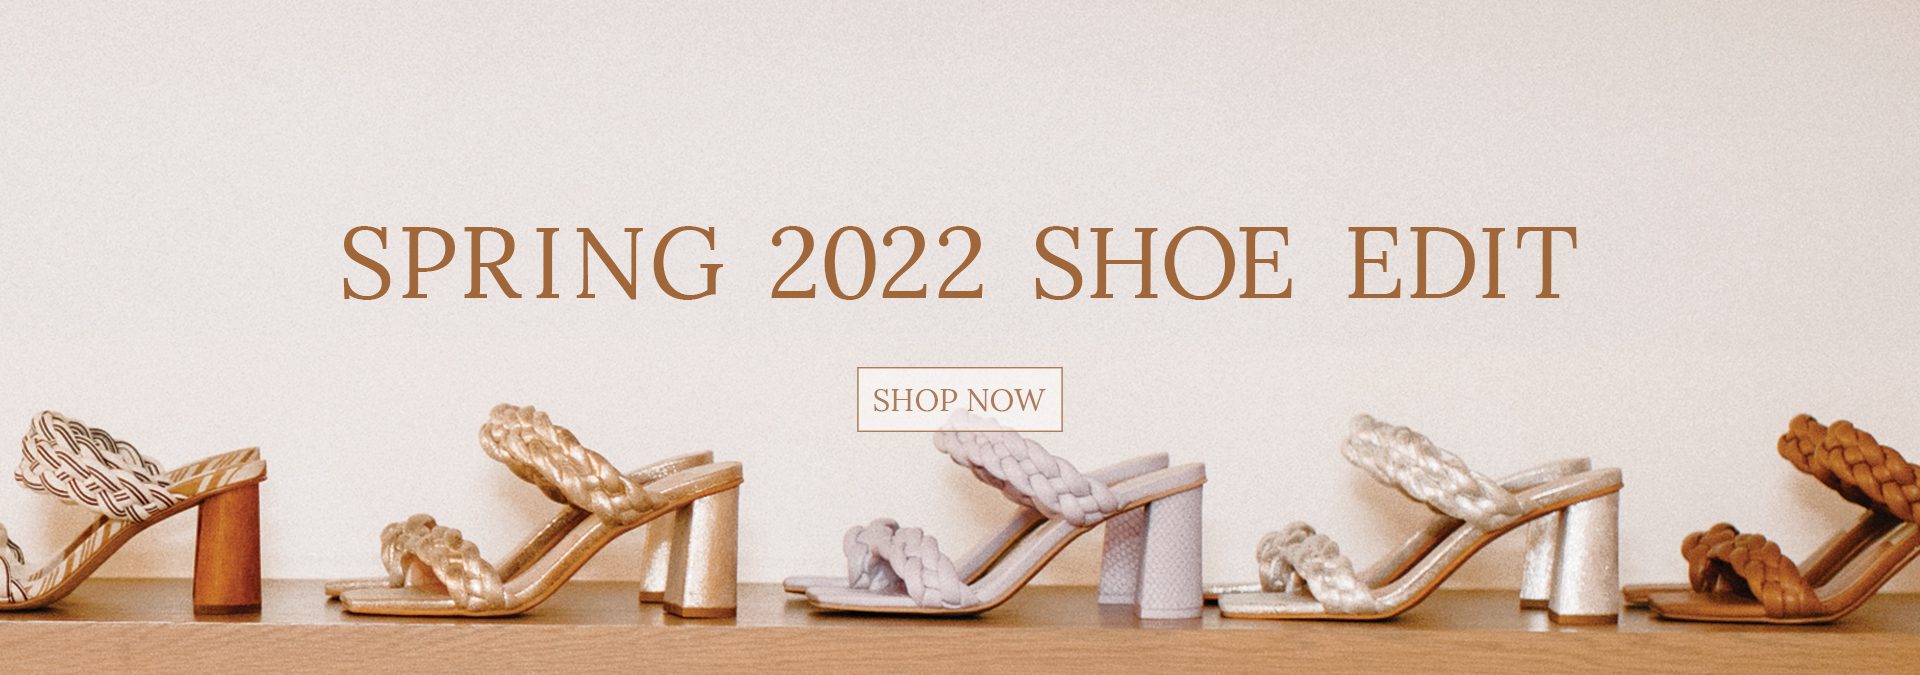 2022 shoe edit banner - e.Allen Boutique